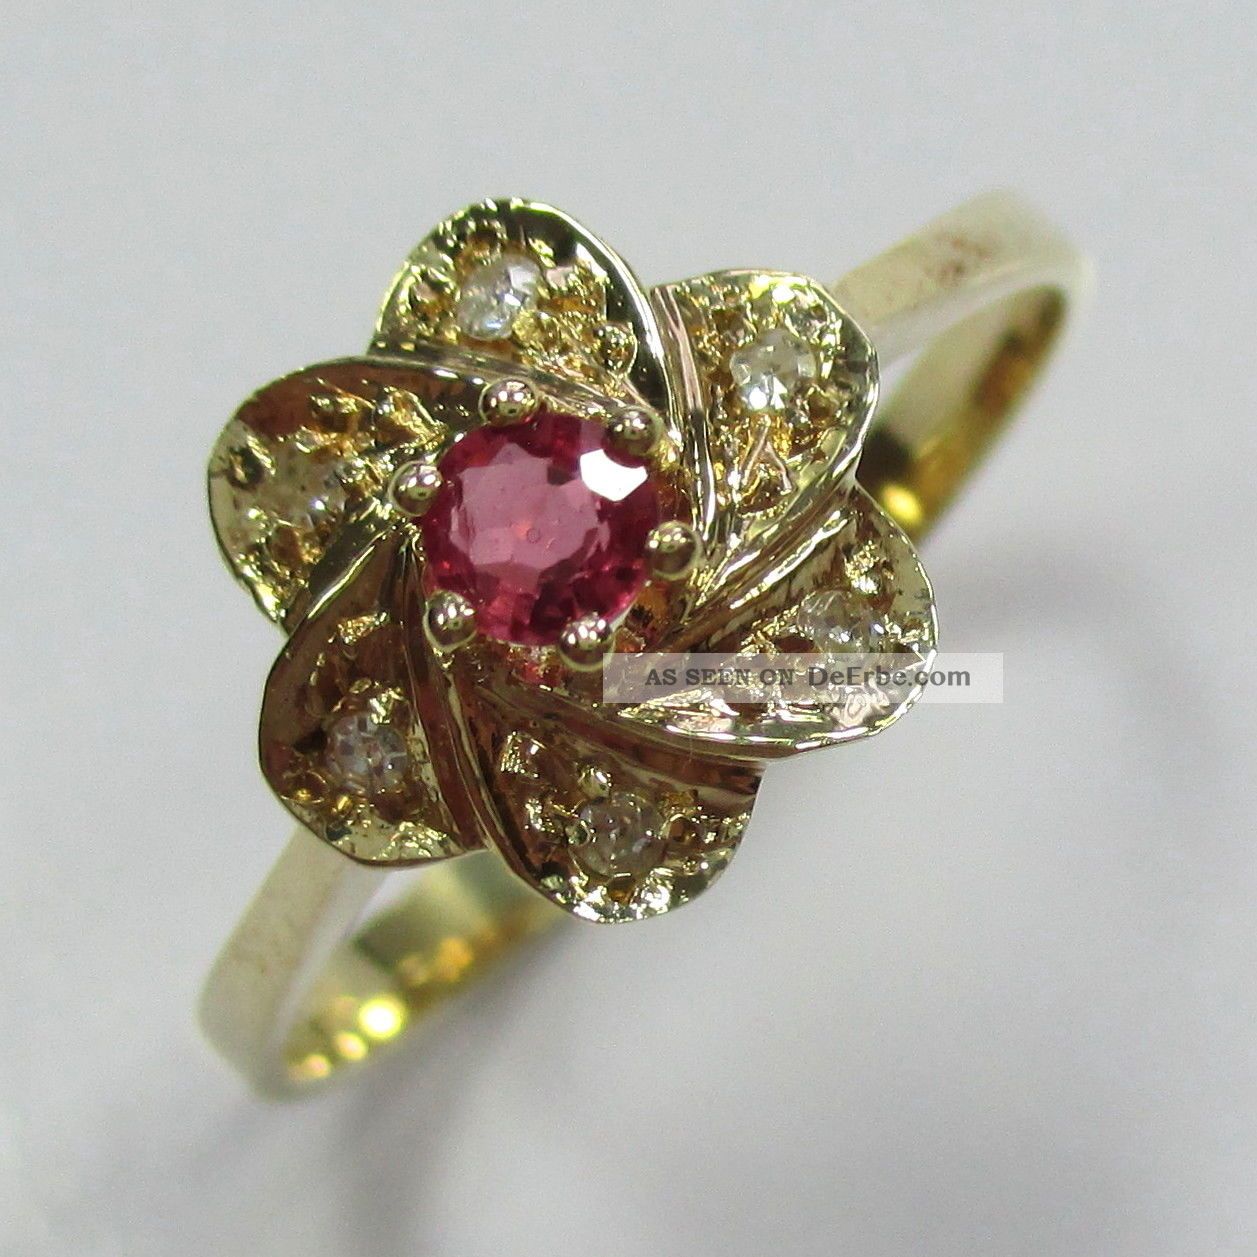 101 - Eleganter Ring Aus Gold 585 Mit Rubin Und Diamanten - - - Video - 1451 - Ringe Bild